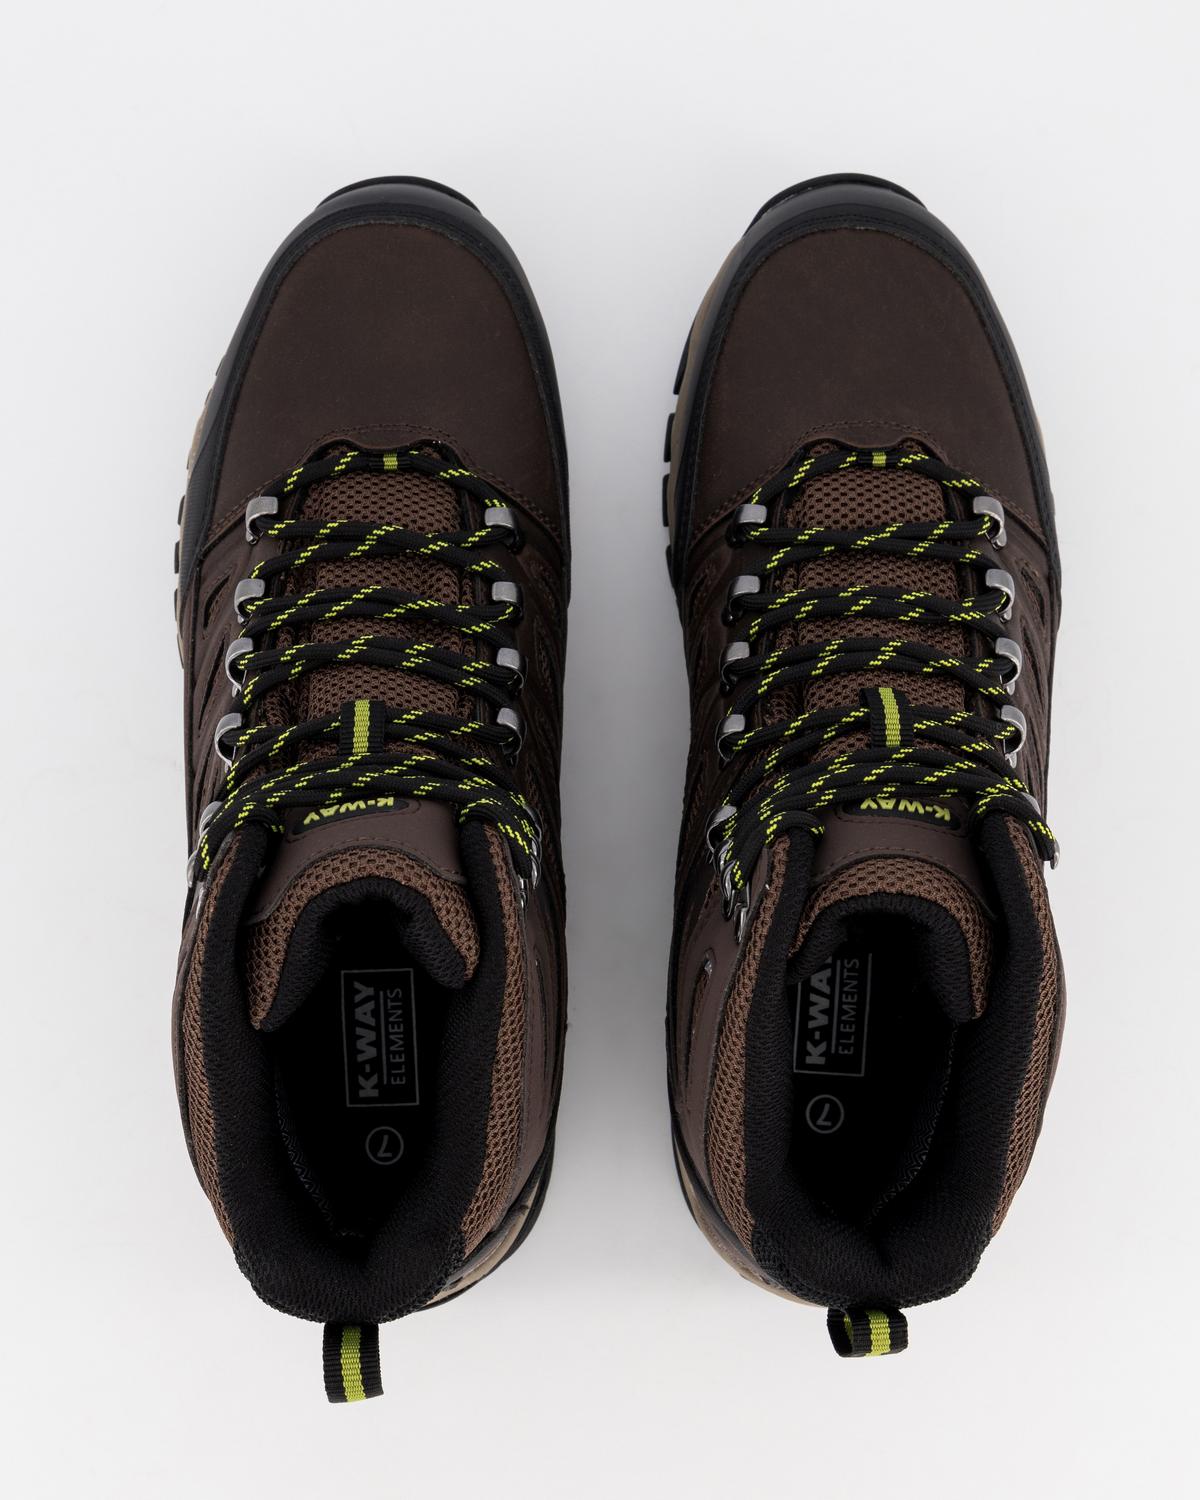 K-Way Elements Men's Nova Hiking Boots -  Black